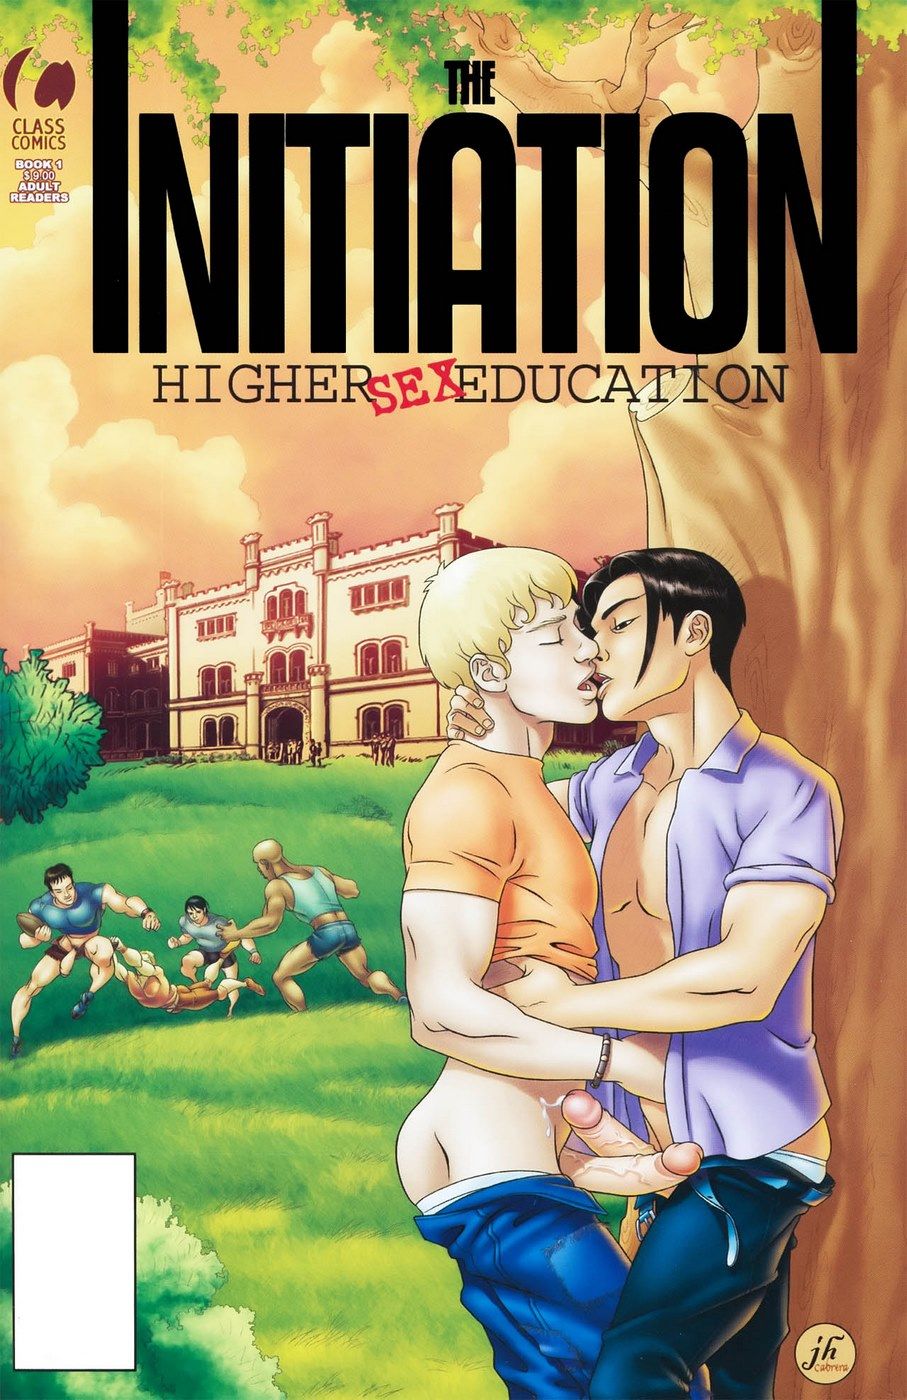 gay die Einleitung höher Sex Bildung page 1